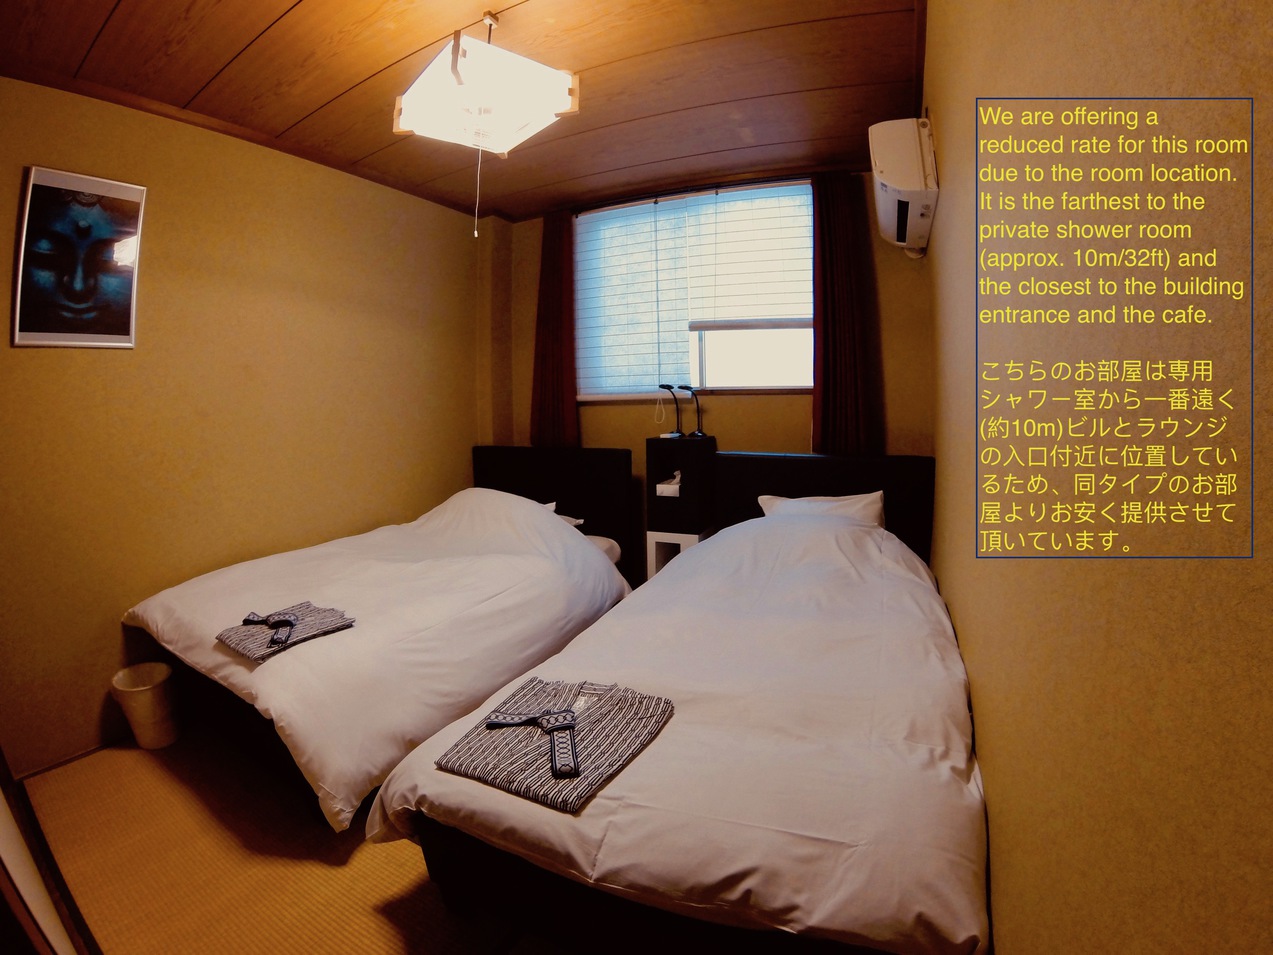 スズキ部屋 Suzuki room